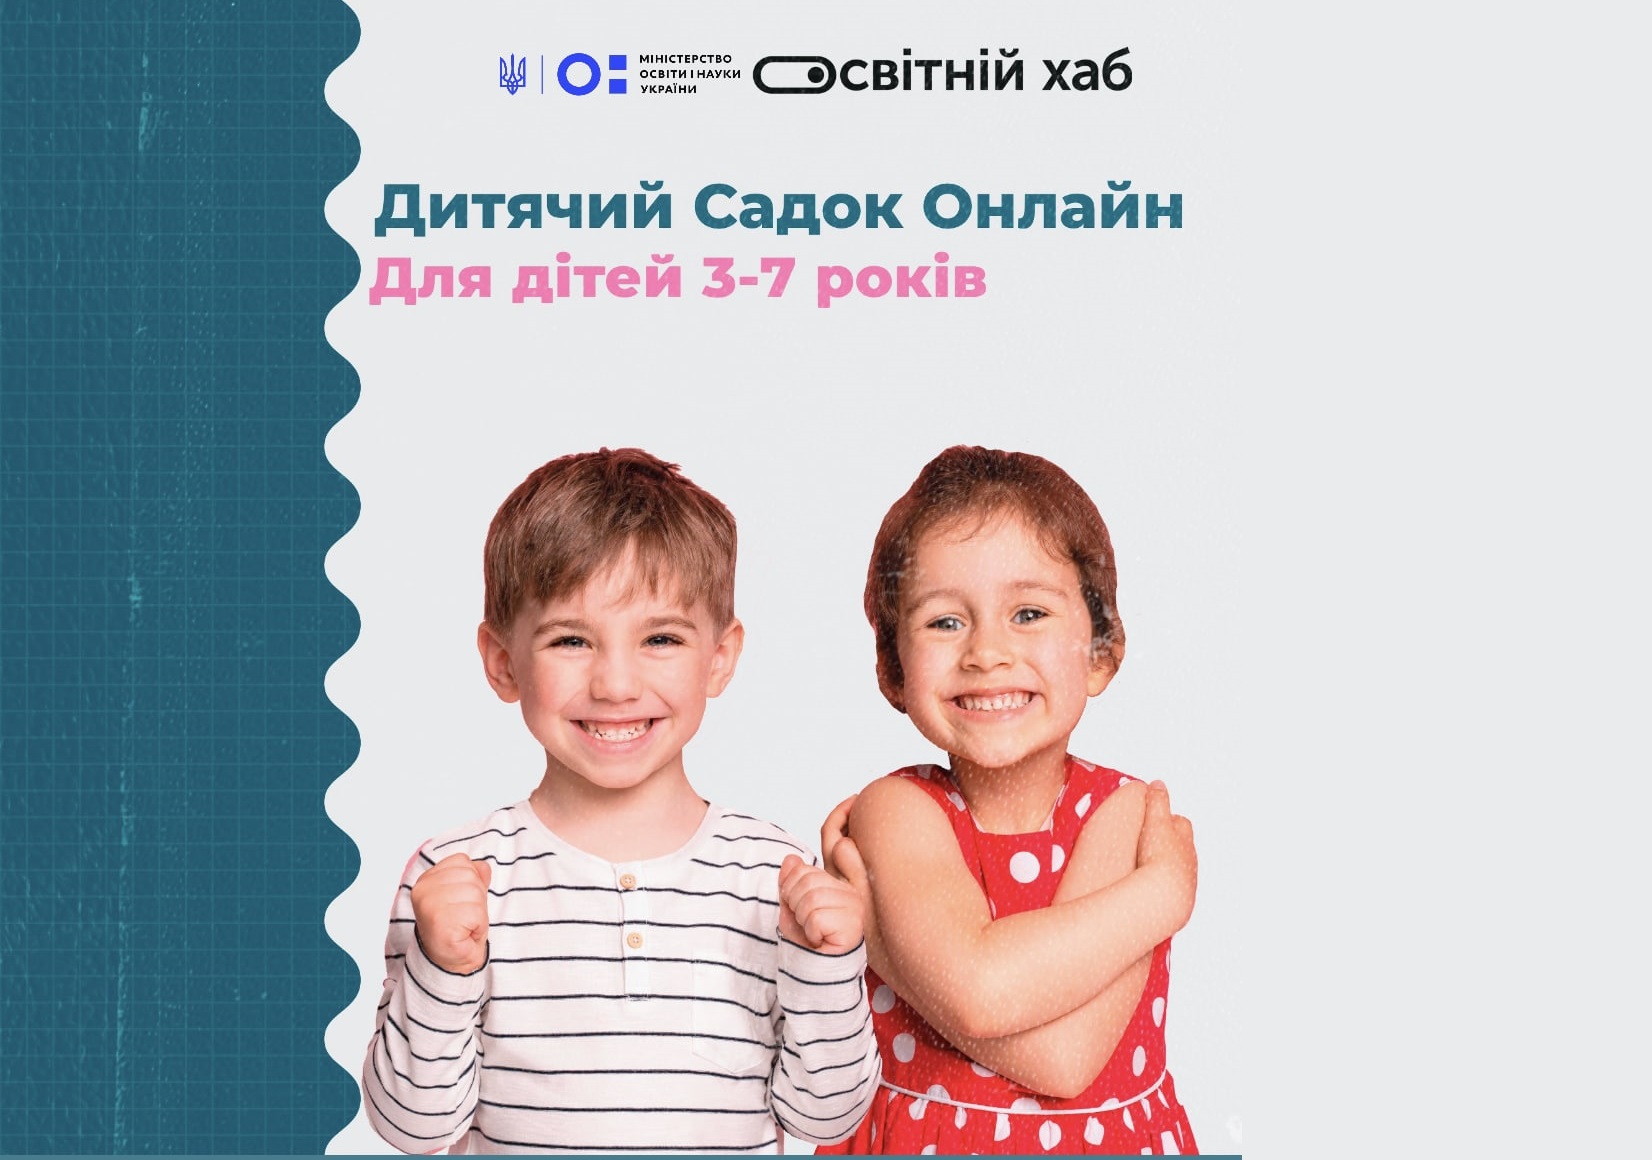 Освітній Хаб - EduHub.in.ua запрошує до дитячого онлайн садка